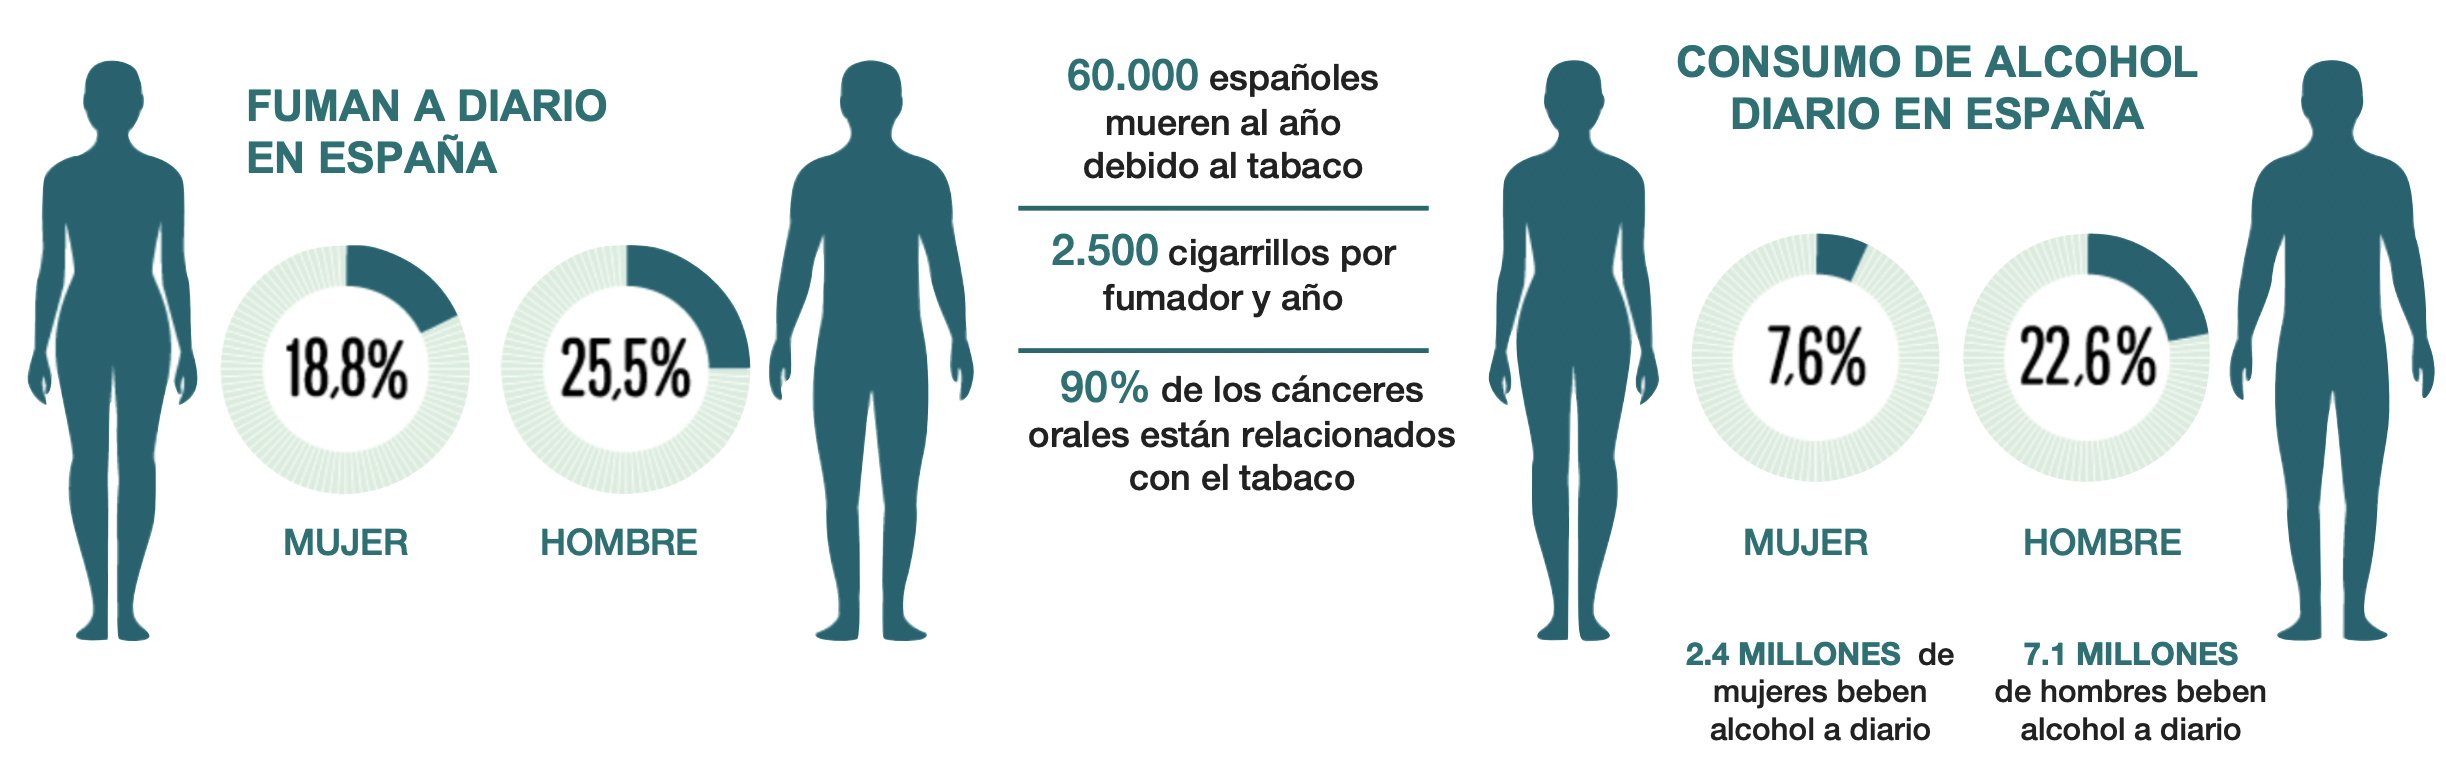 Infografía consumo tabaco y alcohol